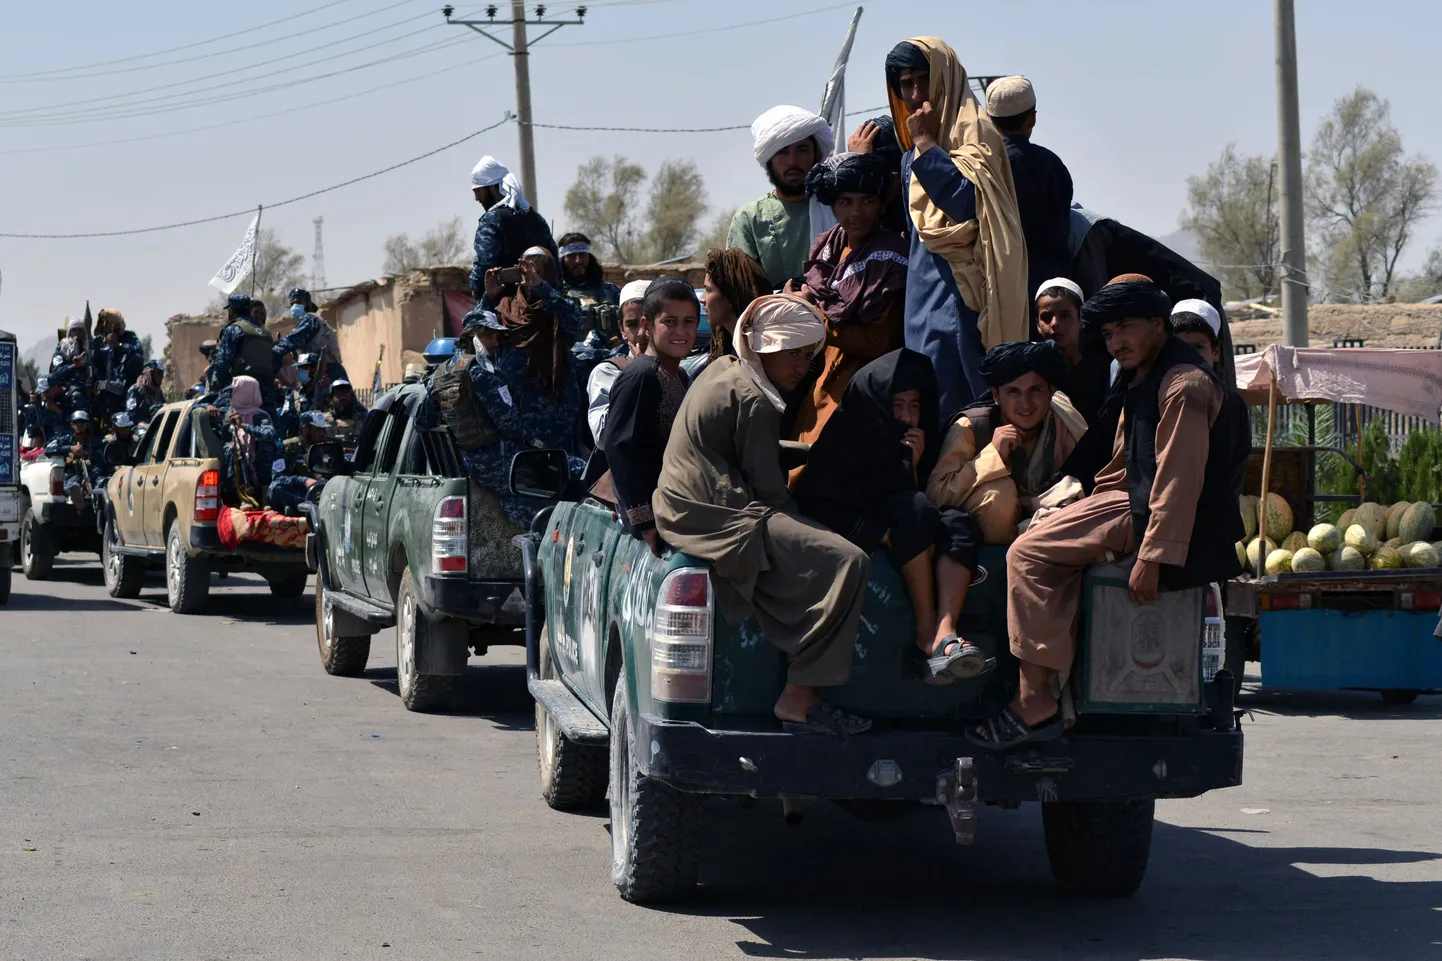 Talibani paraadil näidati ära võetud USA sõjatehnikat.